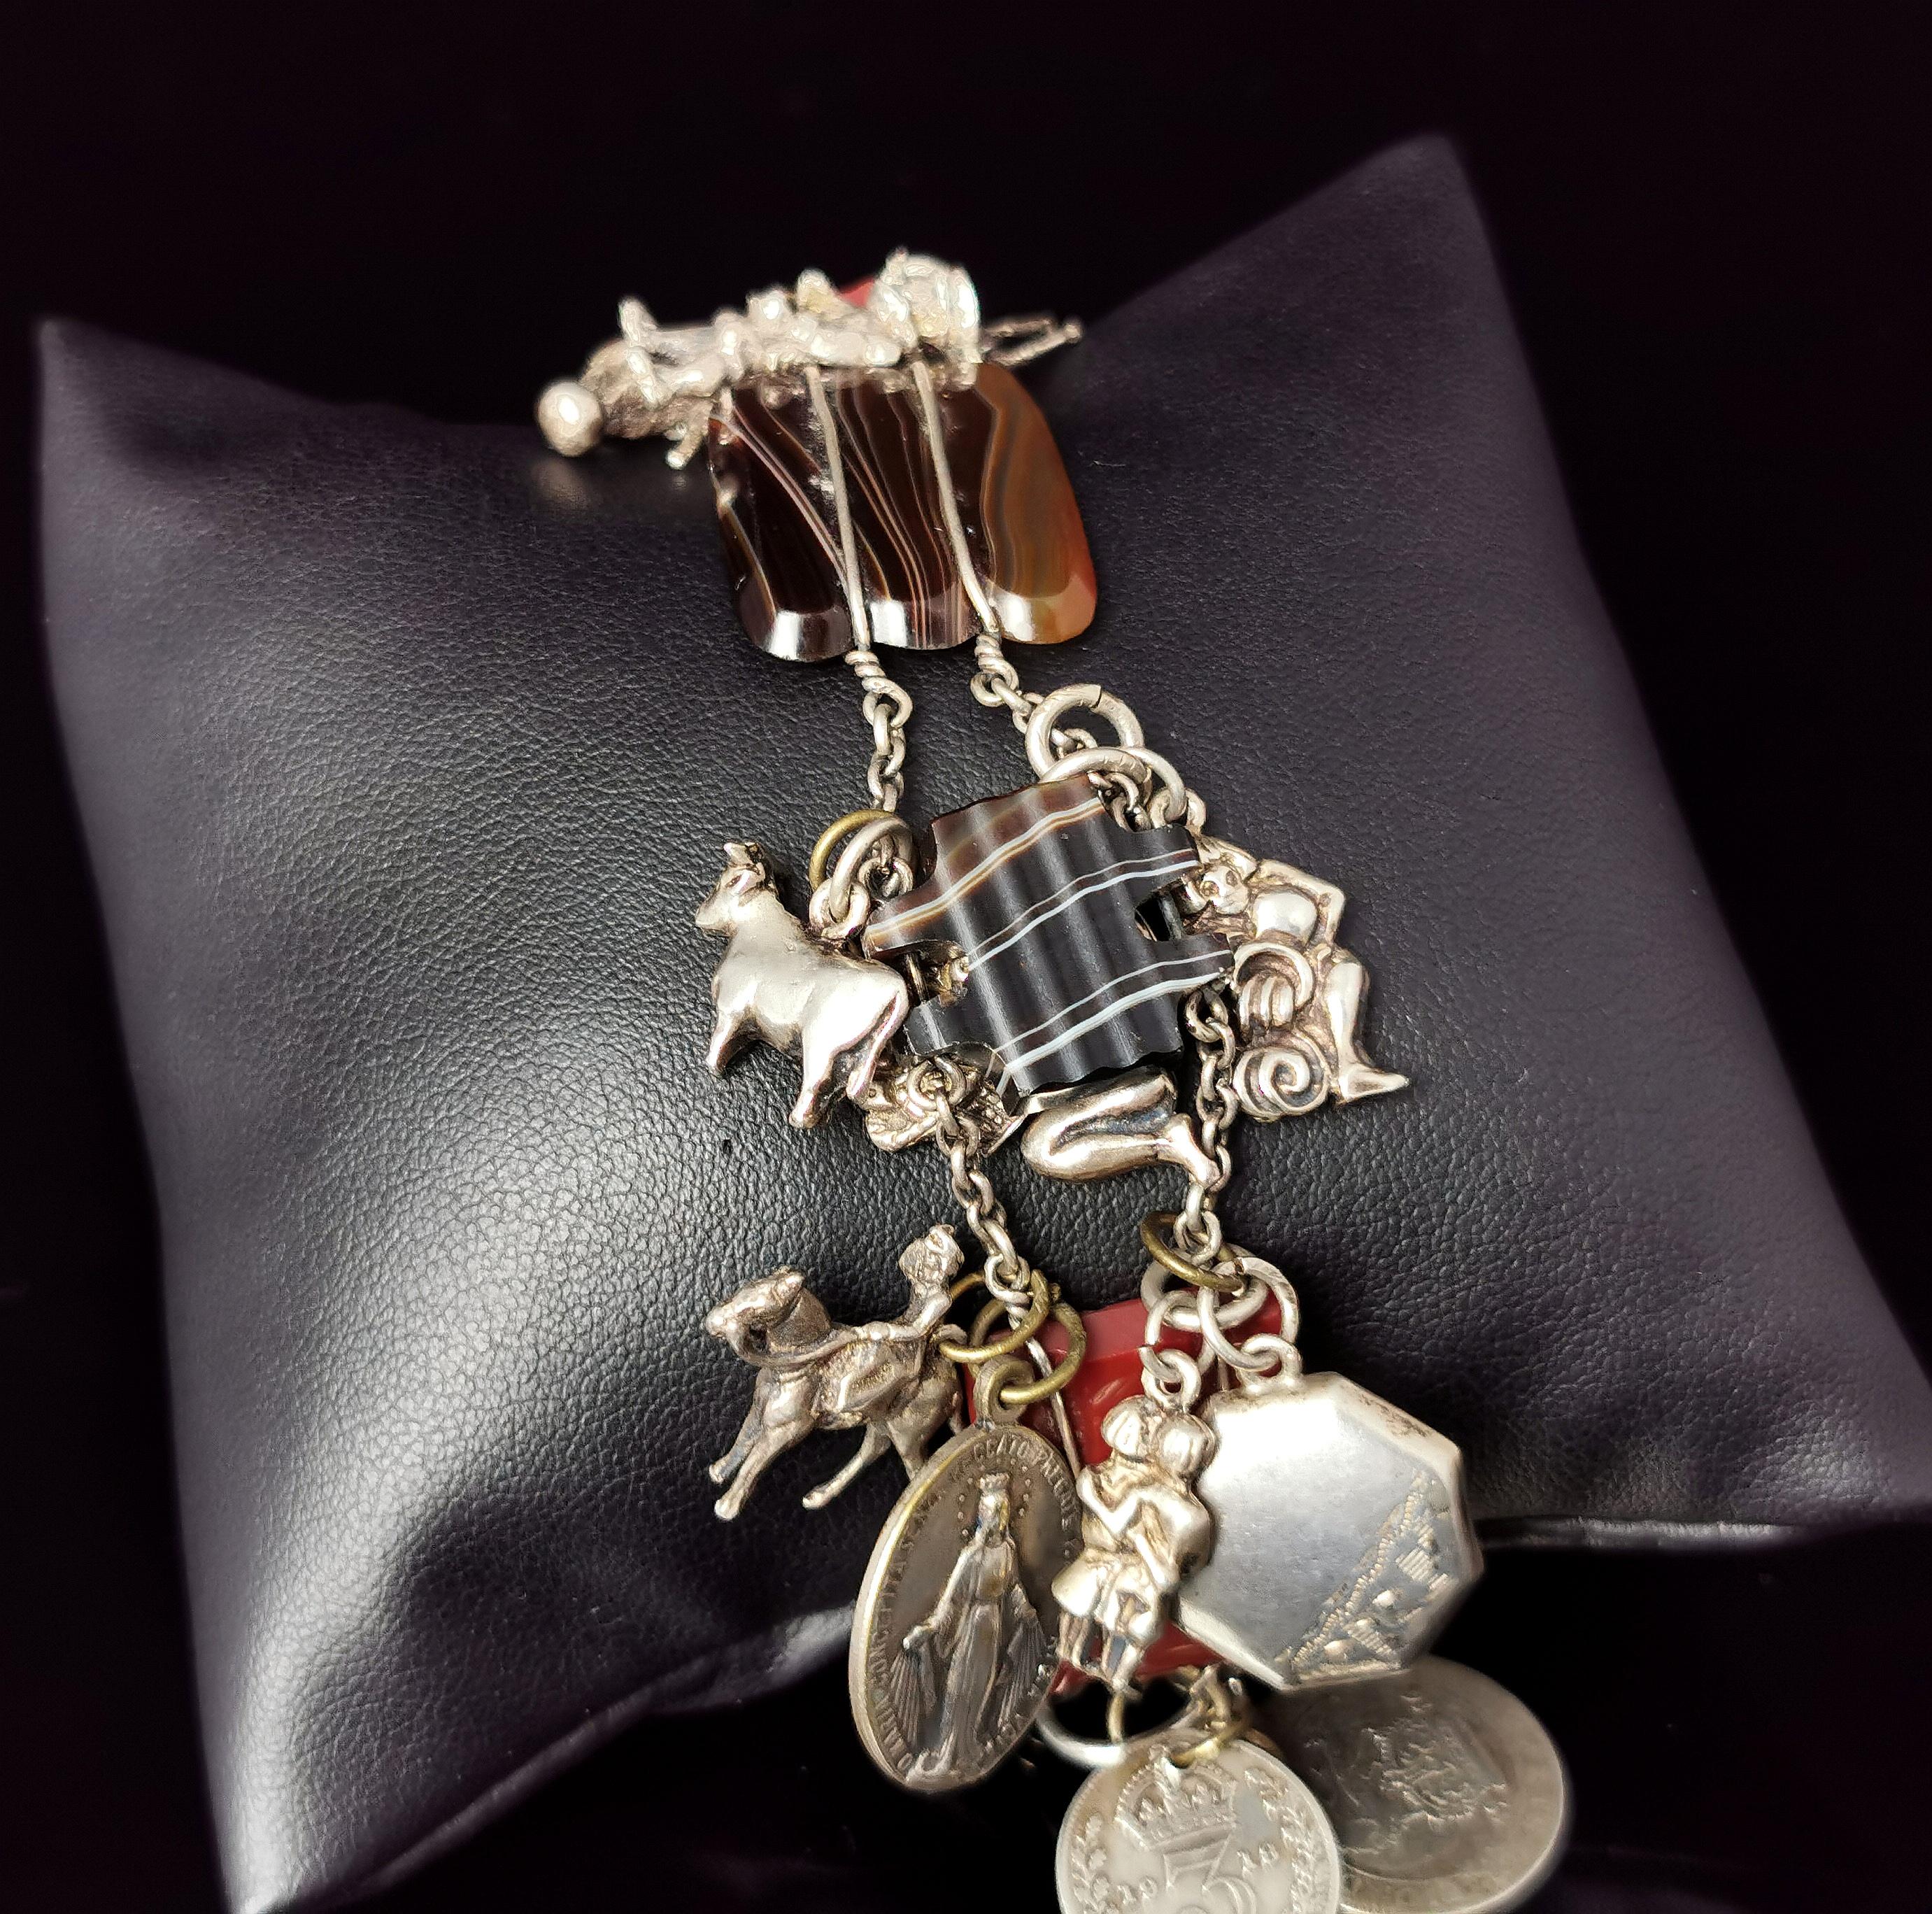 Eine wunderschöne und ungewöhnliche antike, spätviktorianischen Ära schottischen Achat und Silber Charme Armband.

Das Armband zeigt wunderschön facettierte Paneele aus poliertem Achat, die jeweils unterschiedliche Schattierungen aufweisen. Zu den